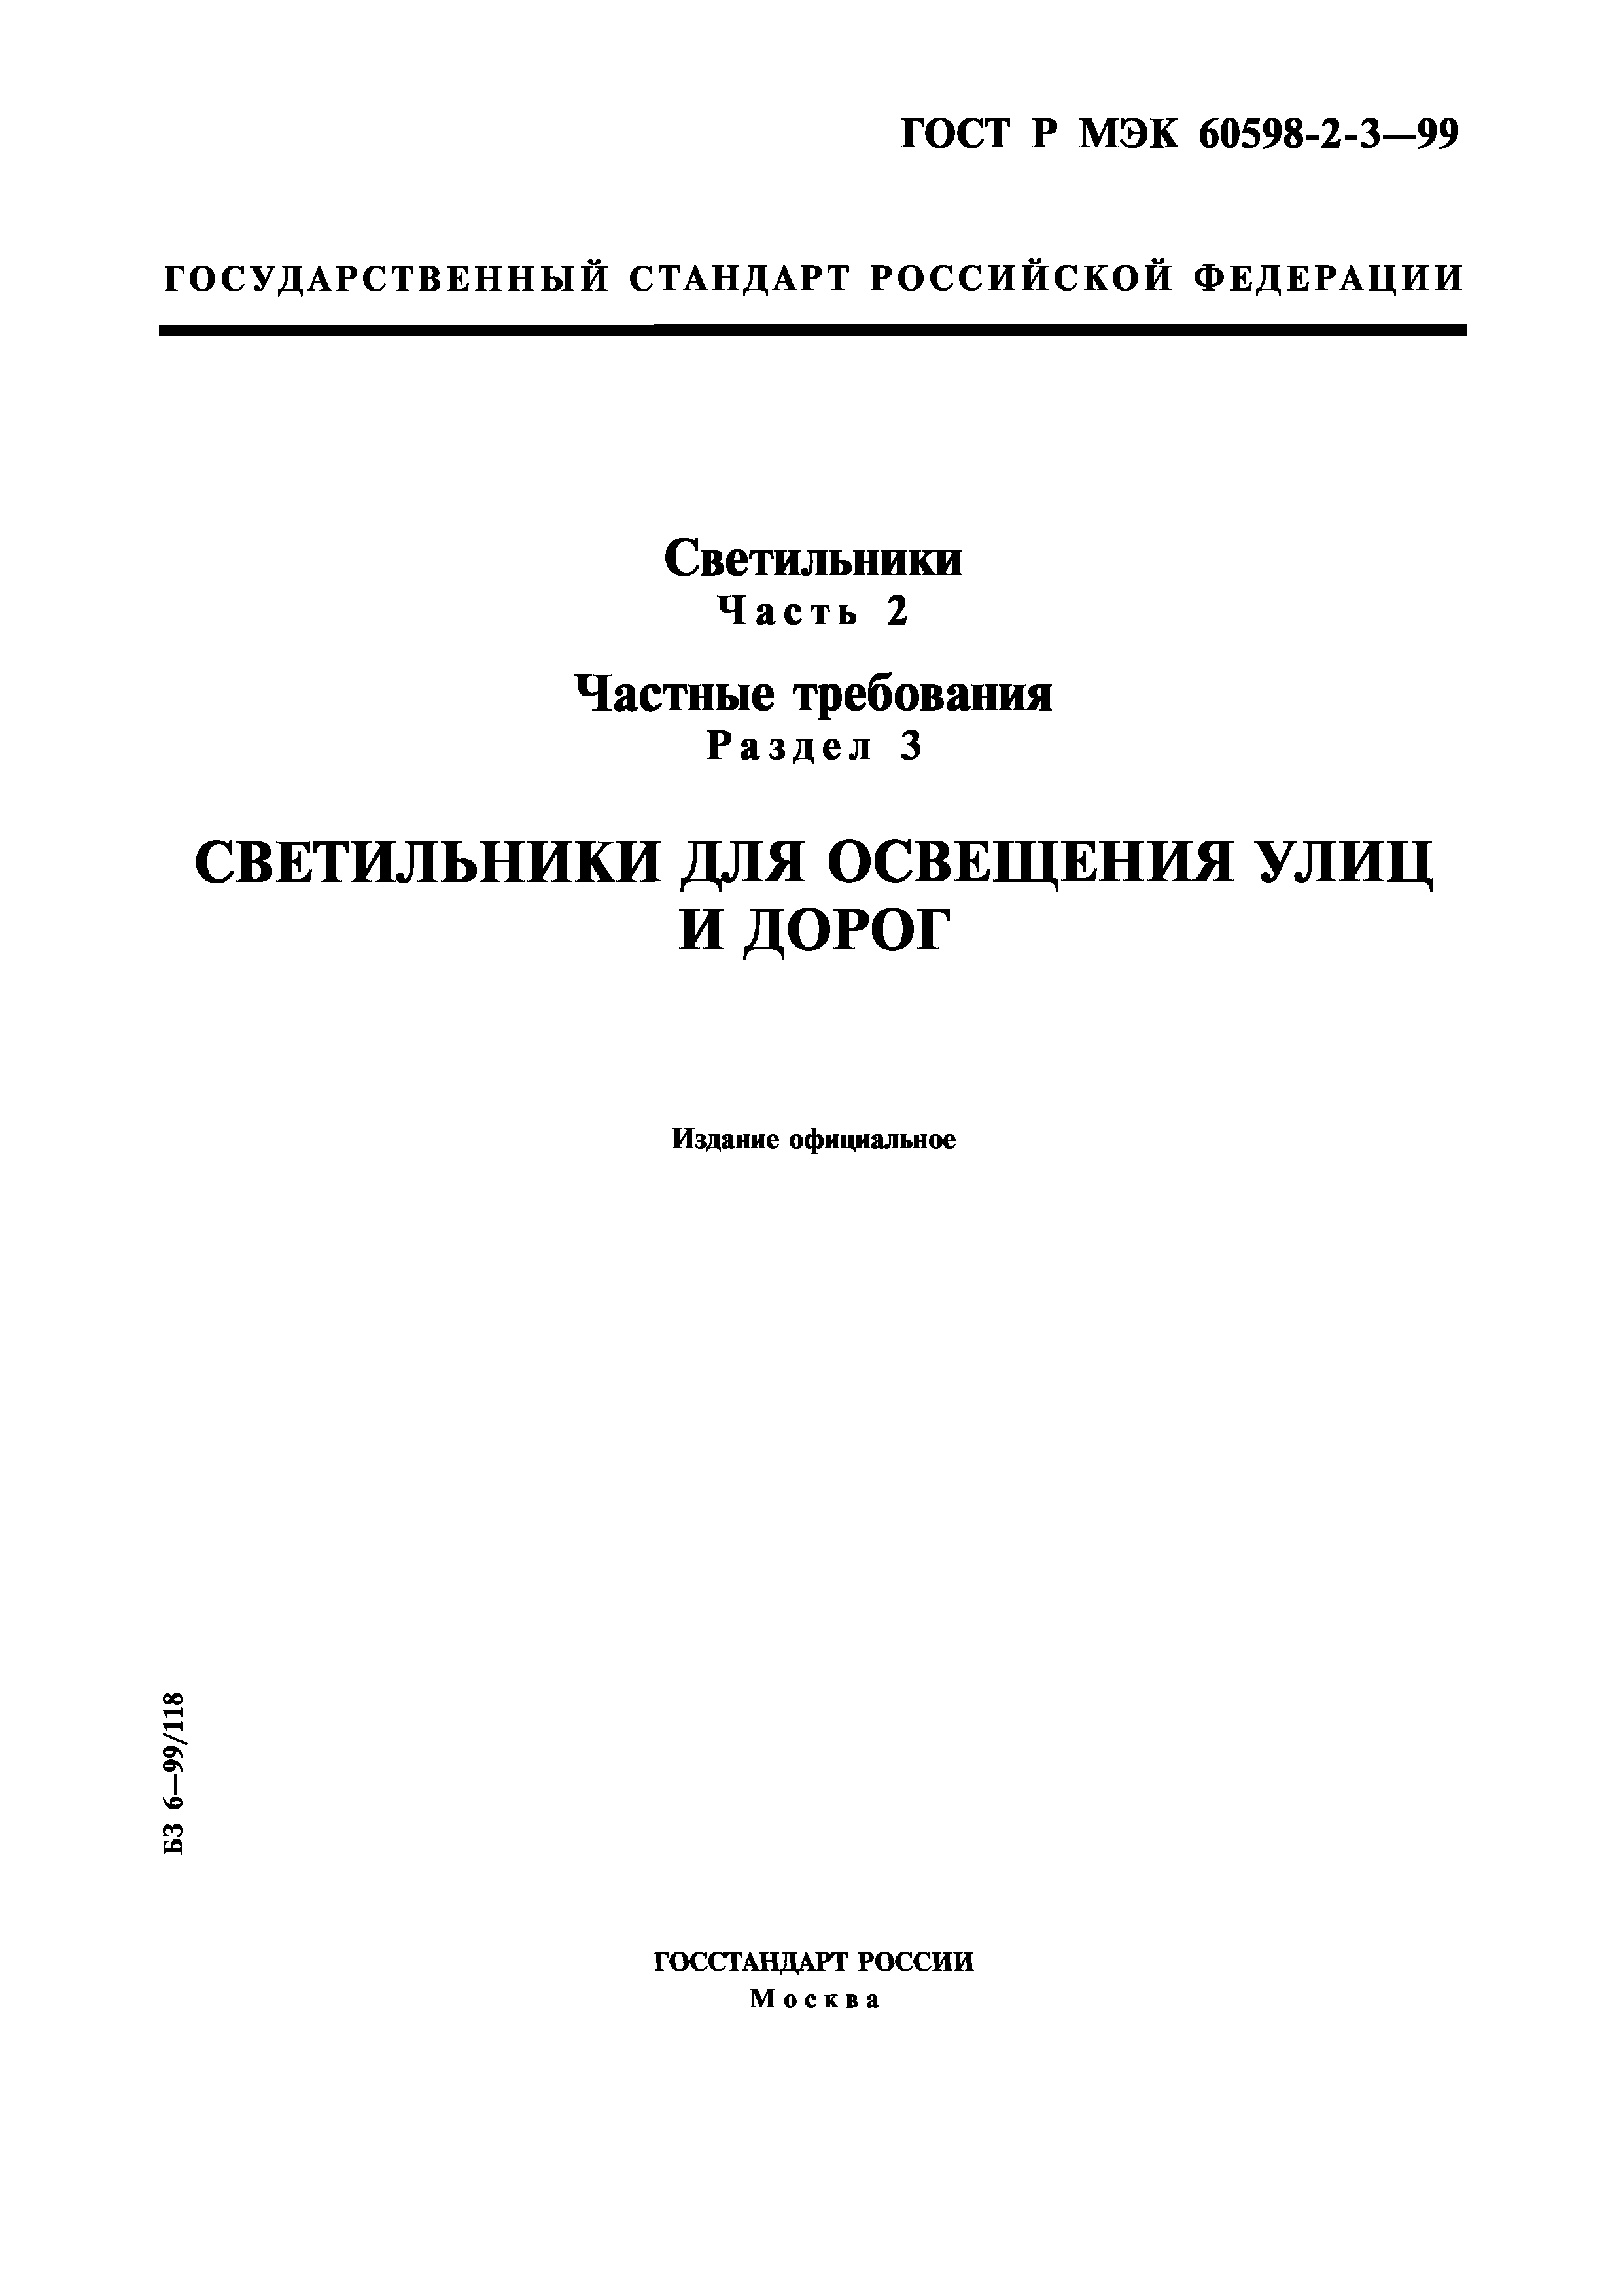 ГОСТ Р МЭК 60598-2-3-99